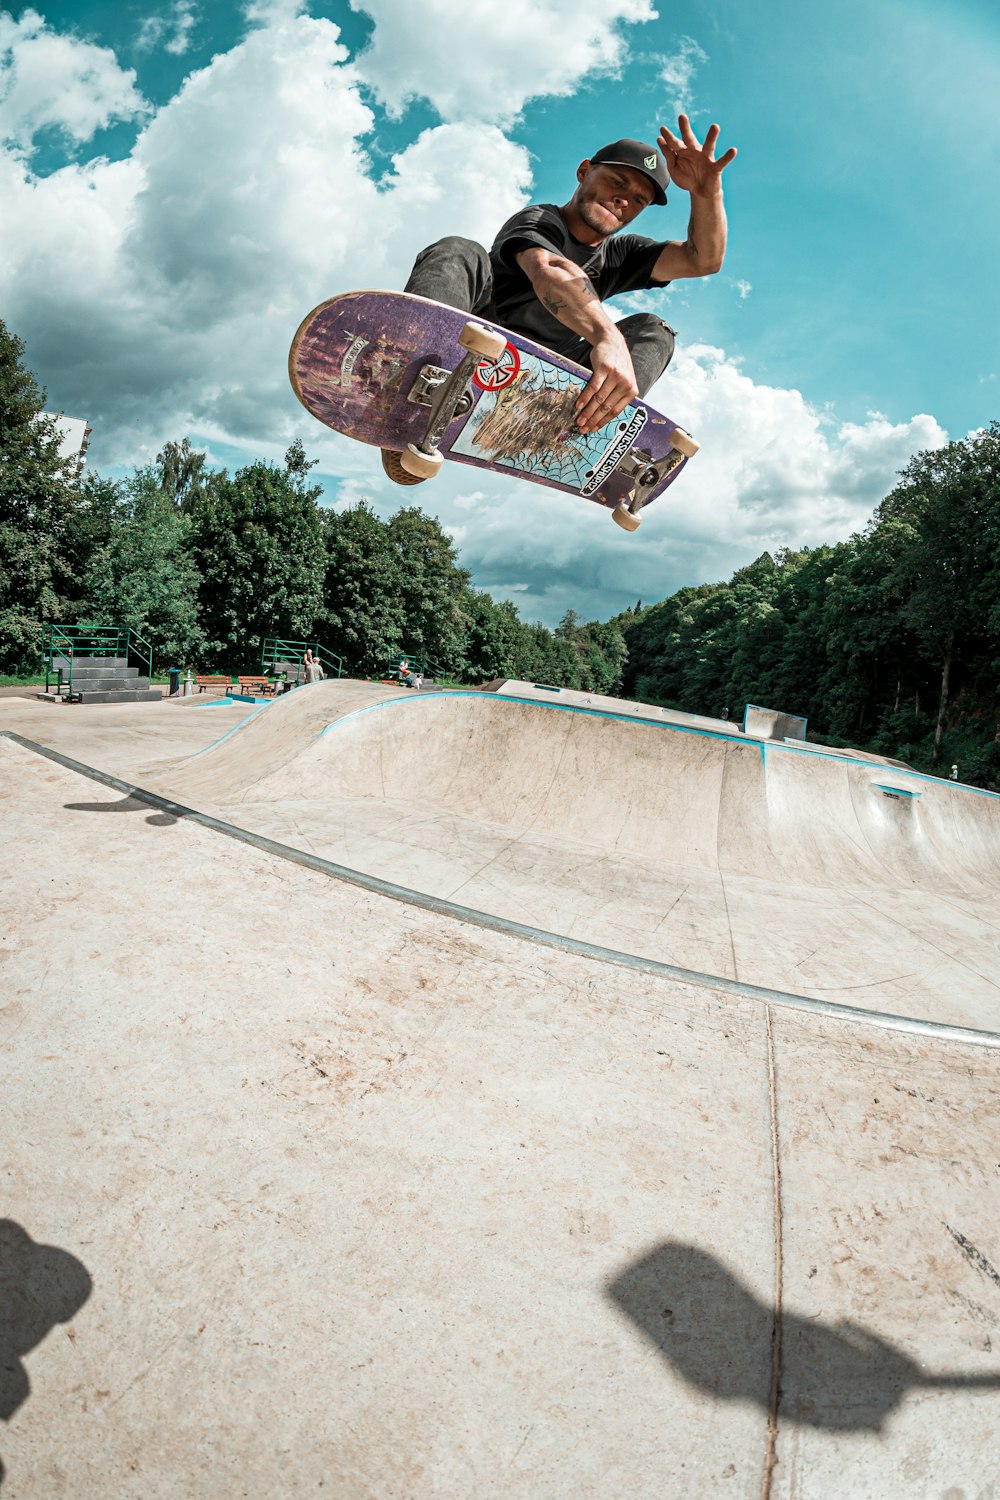 يضخم، يوسع، يبالغ الأطوار التربة cool skateboard pictures - reflectionsbysarah.com